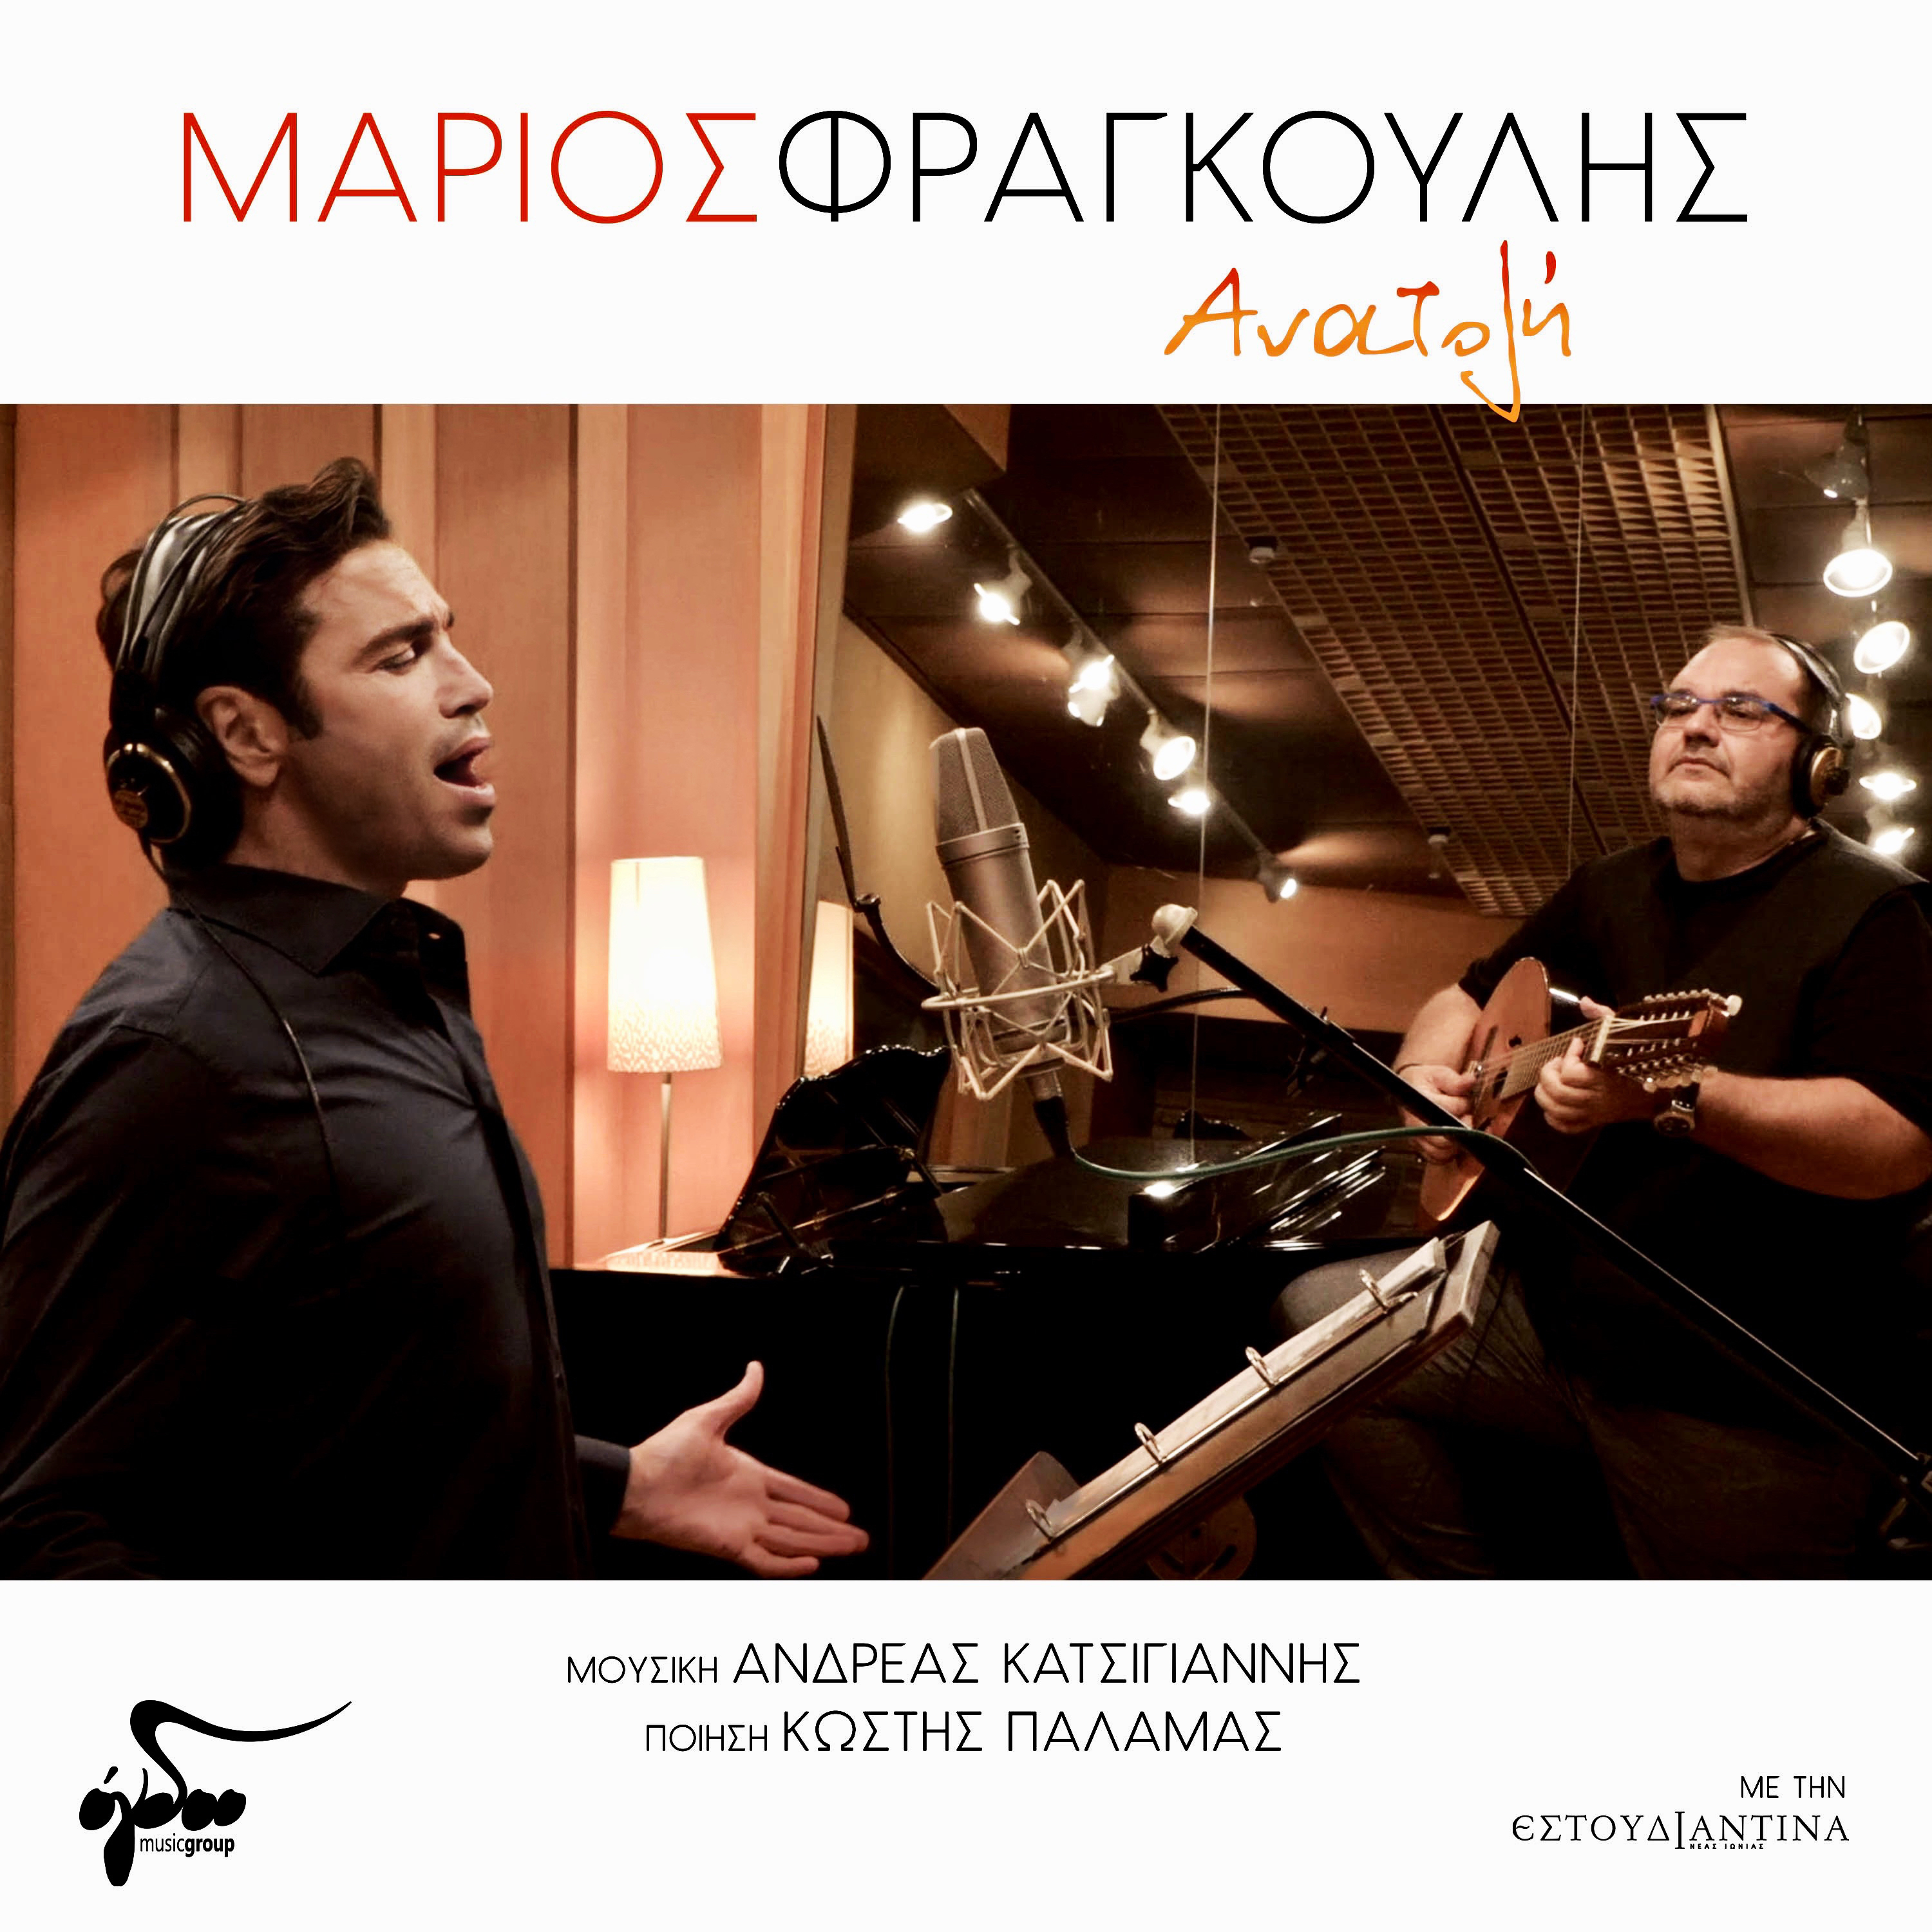 Μάριος Φραγκούλης "Ανατολή" | Νέο τραγούδι - NGradio.gr - NGradio.gr